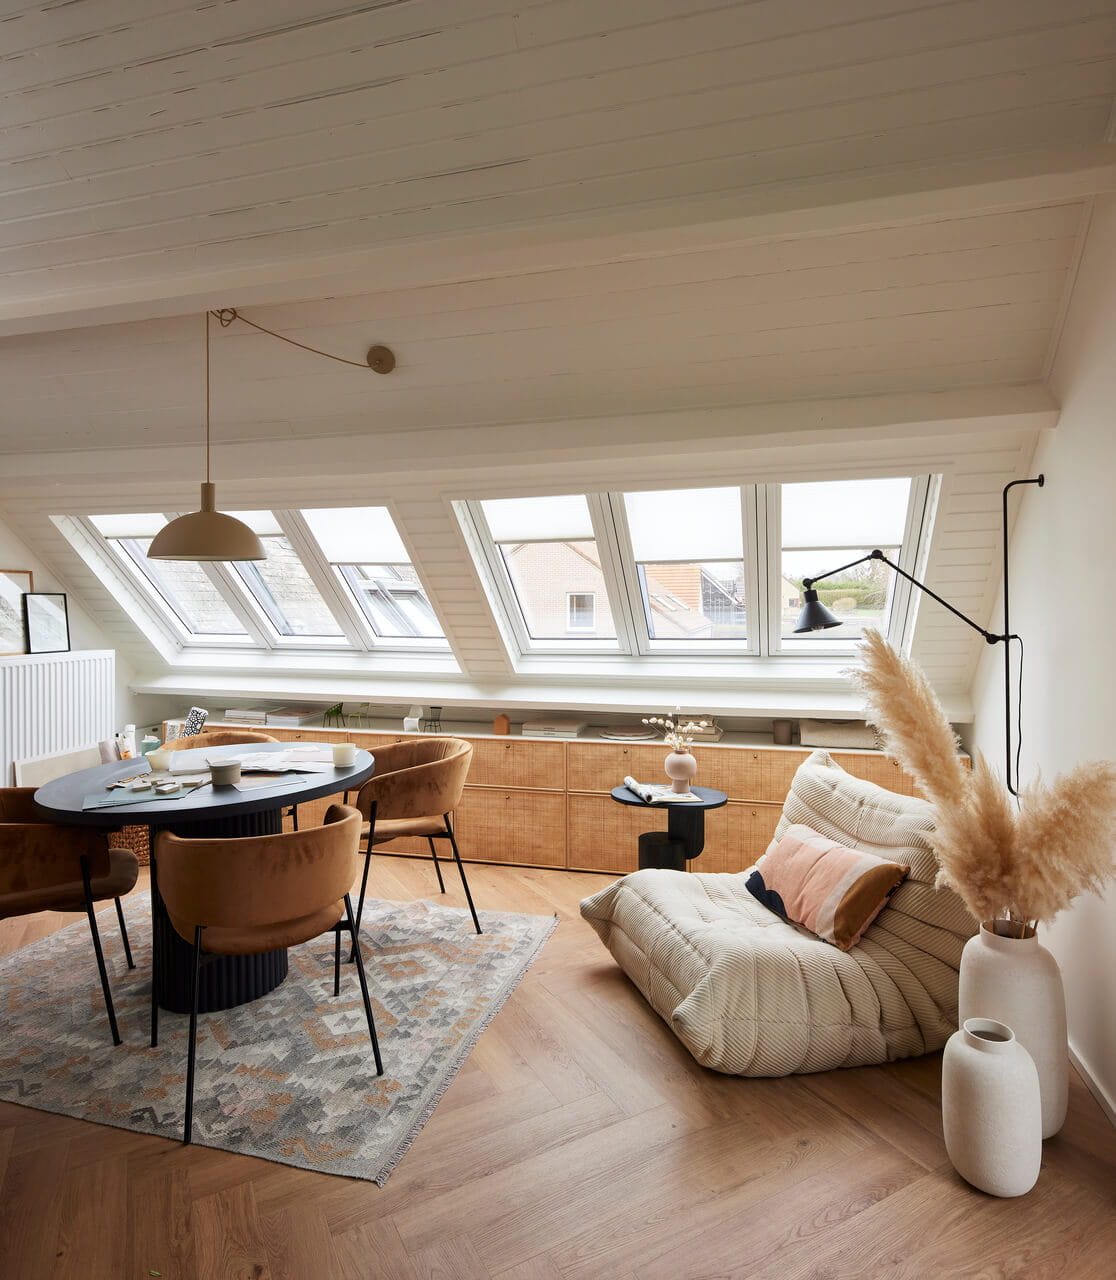 Espace repas moderne dans le grenier avec des fenêtres de toit VELUX et un mobilier chic.